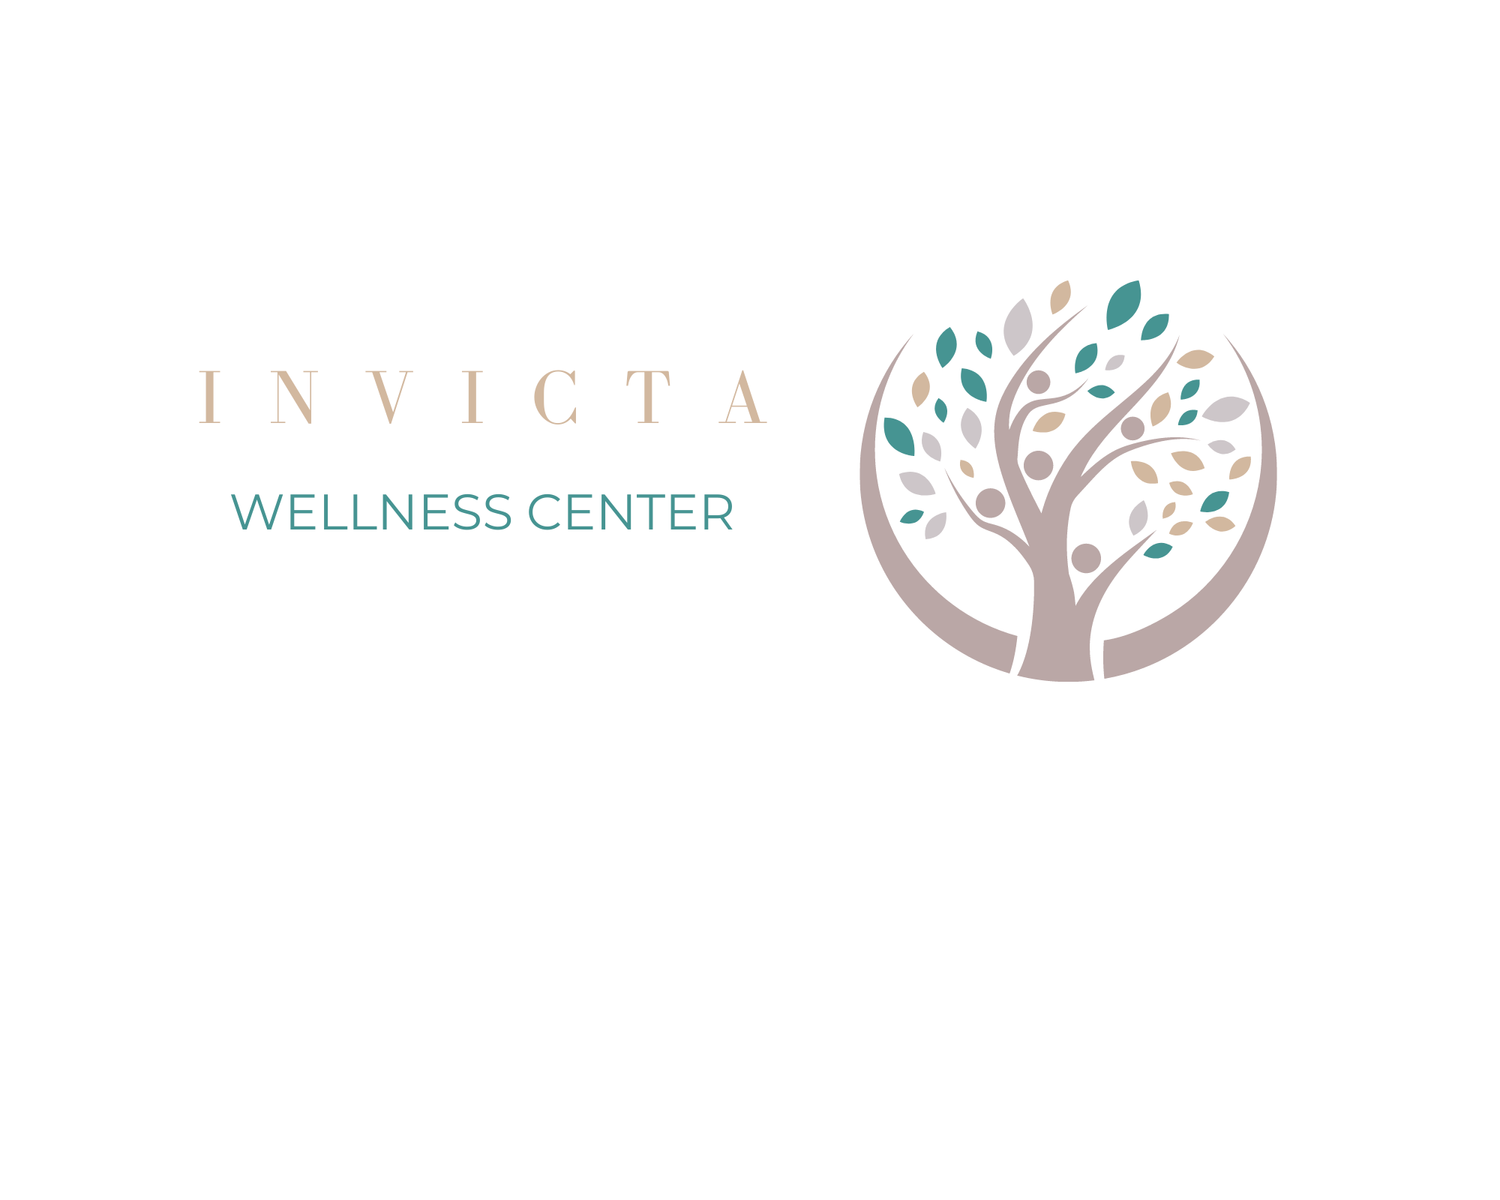 Invicta Wellness Center 